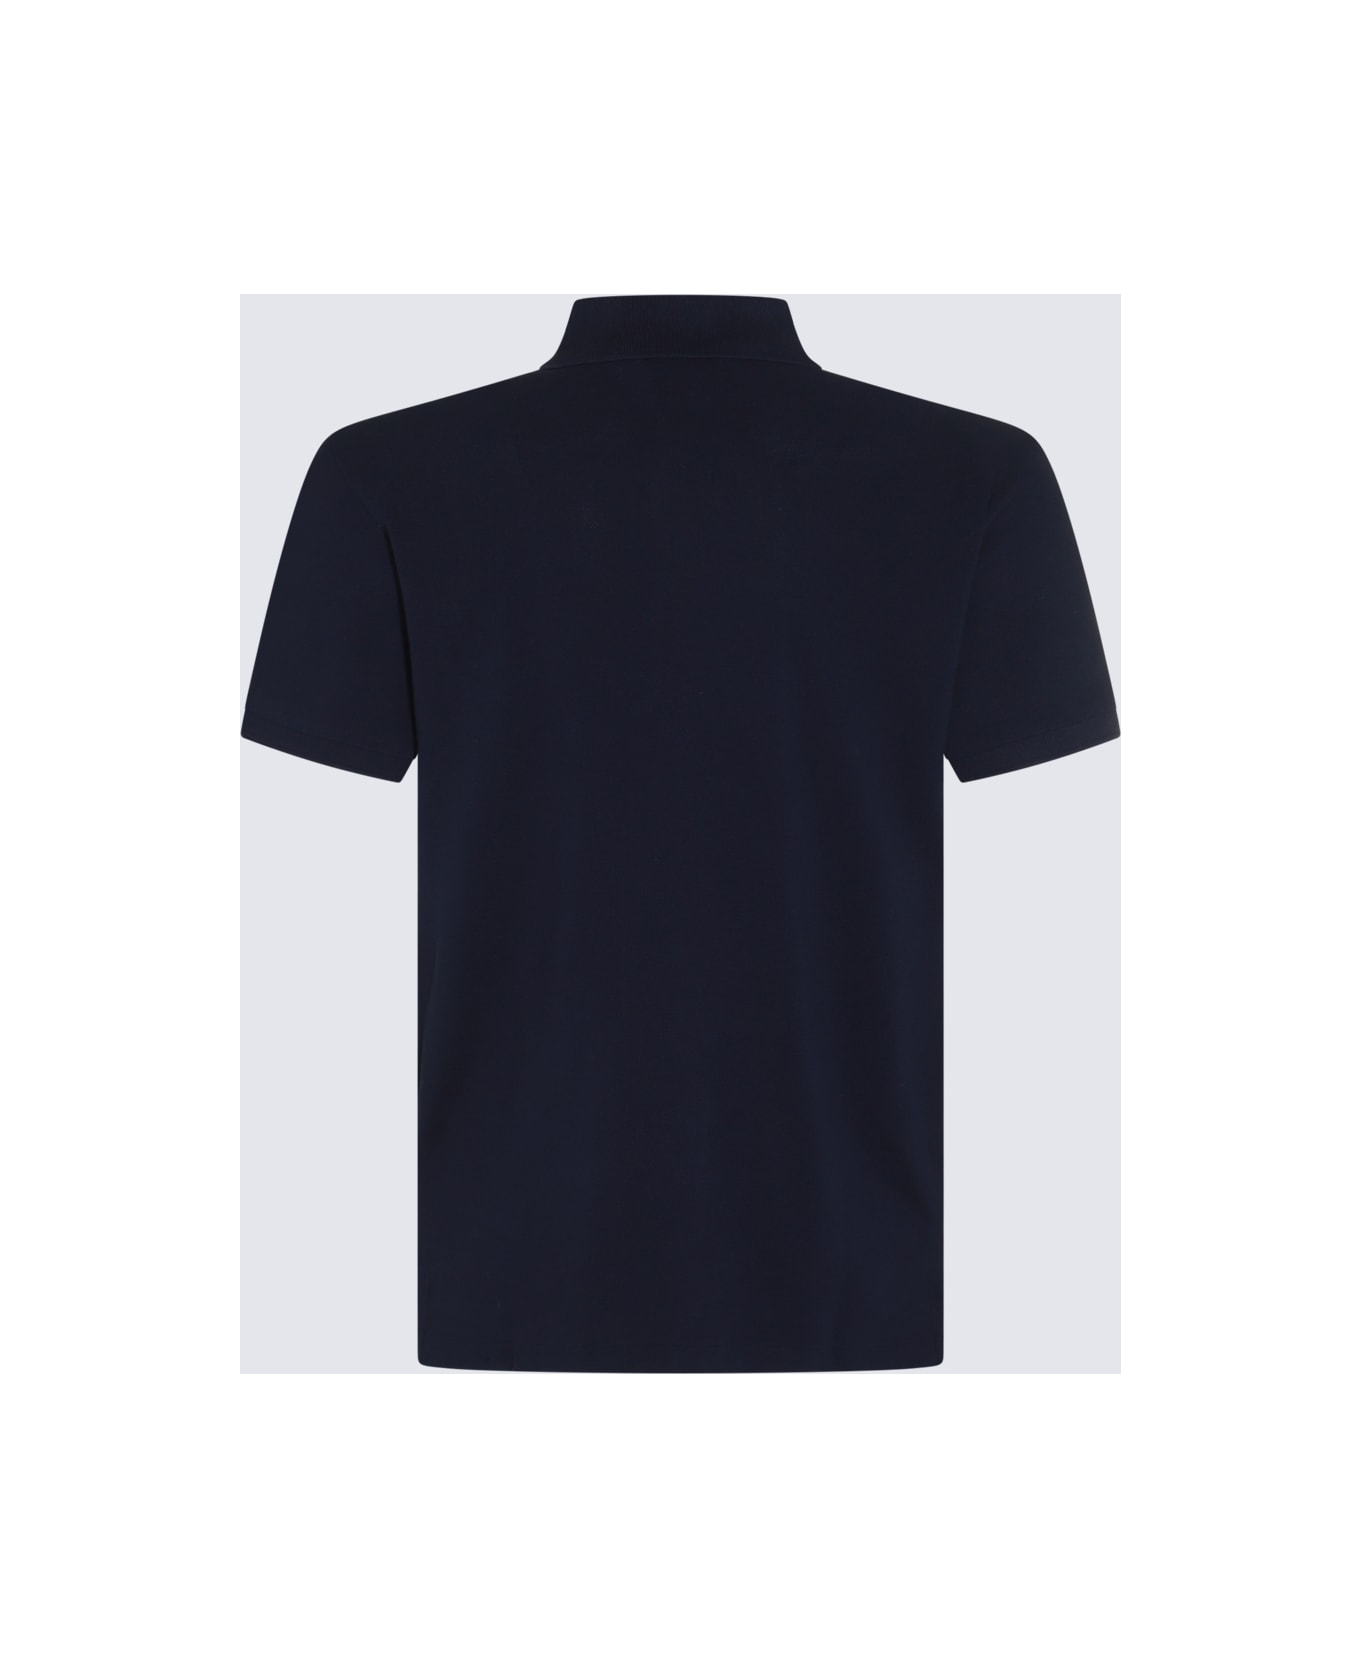 Polo Ralph Lauren Navy Blue Cotton Polo Shirt - NEWPORT NAVY